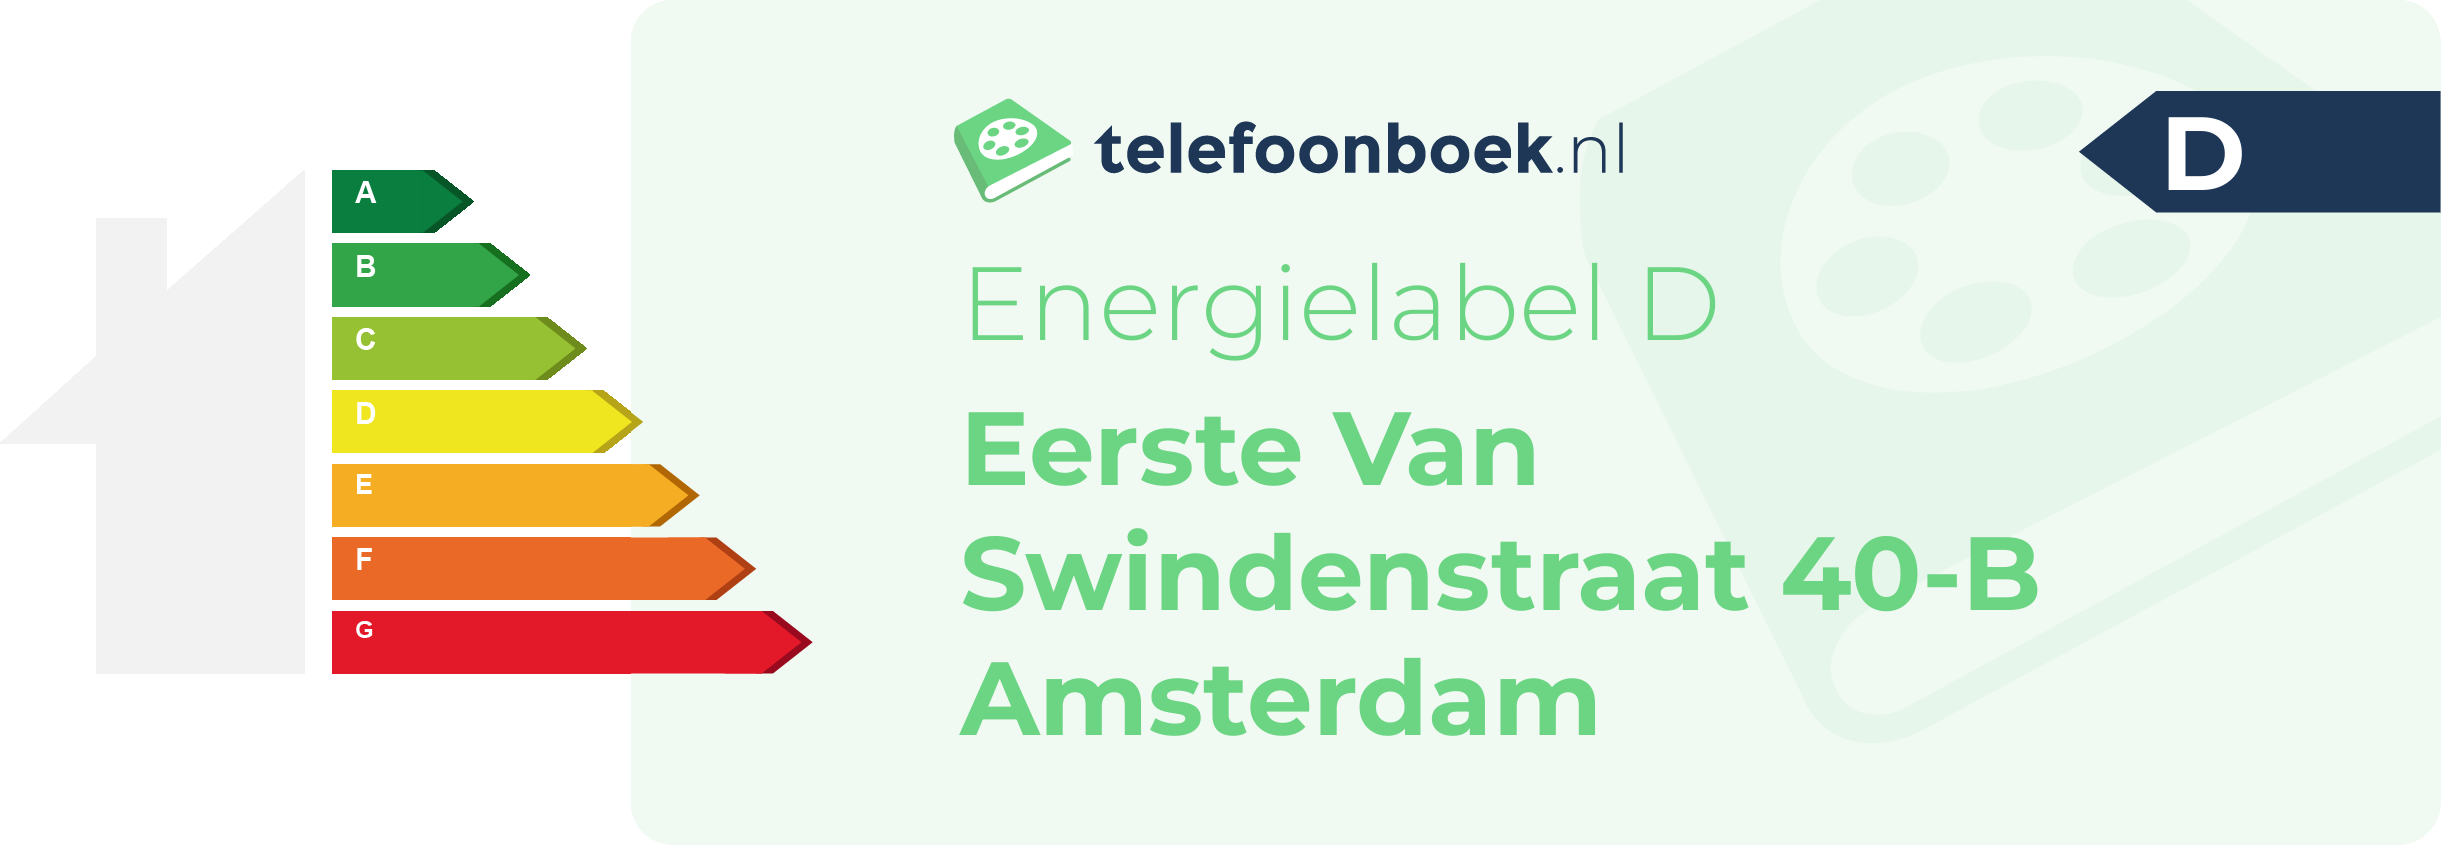 Energielabel Eerste Van Swindenstraat 40-B Amsterdam